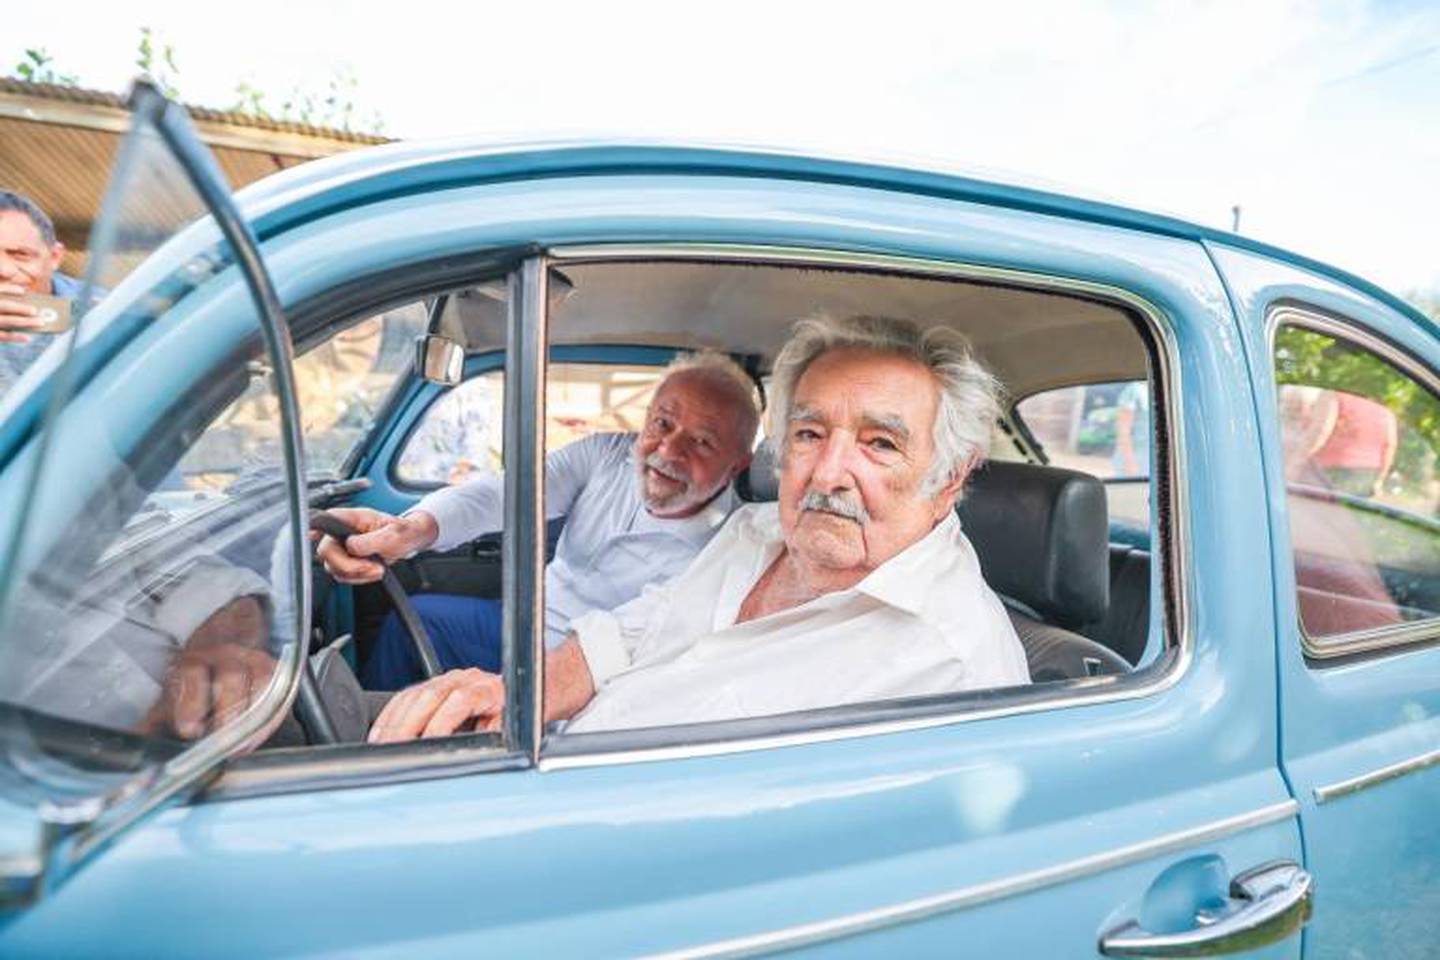 Mujica y Lula son presidentes que comparten ideales progresistas.